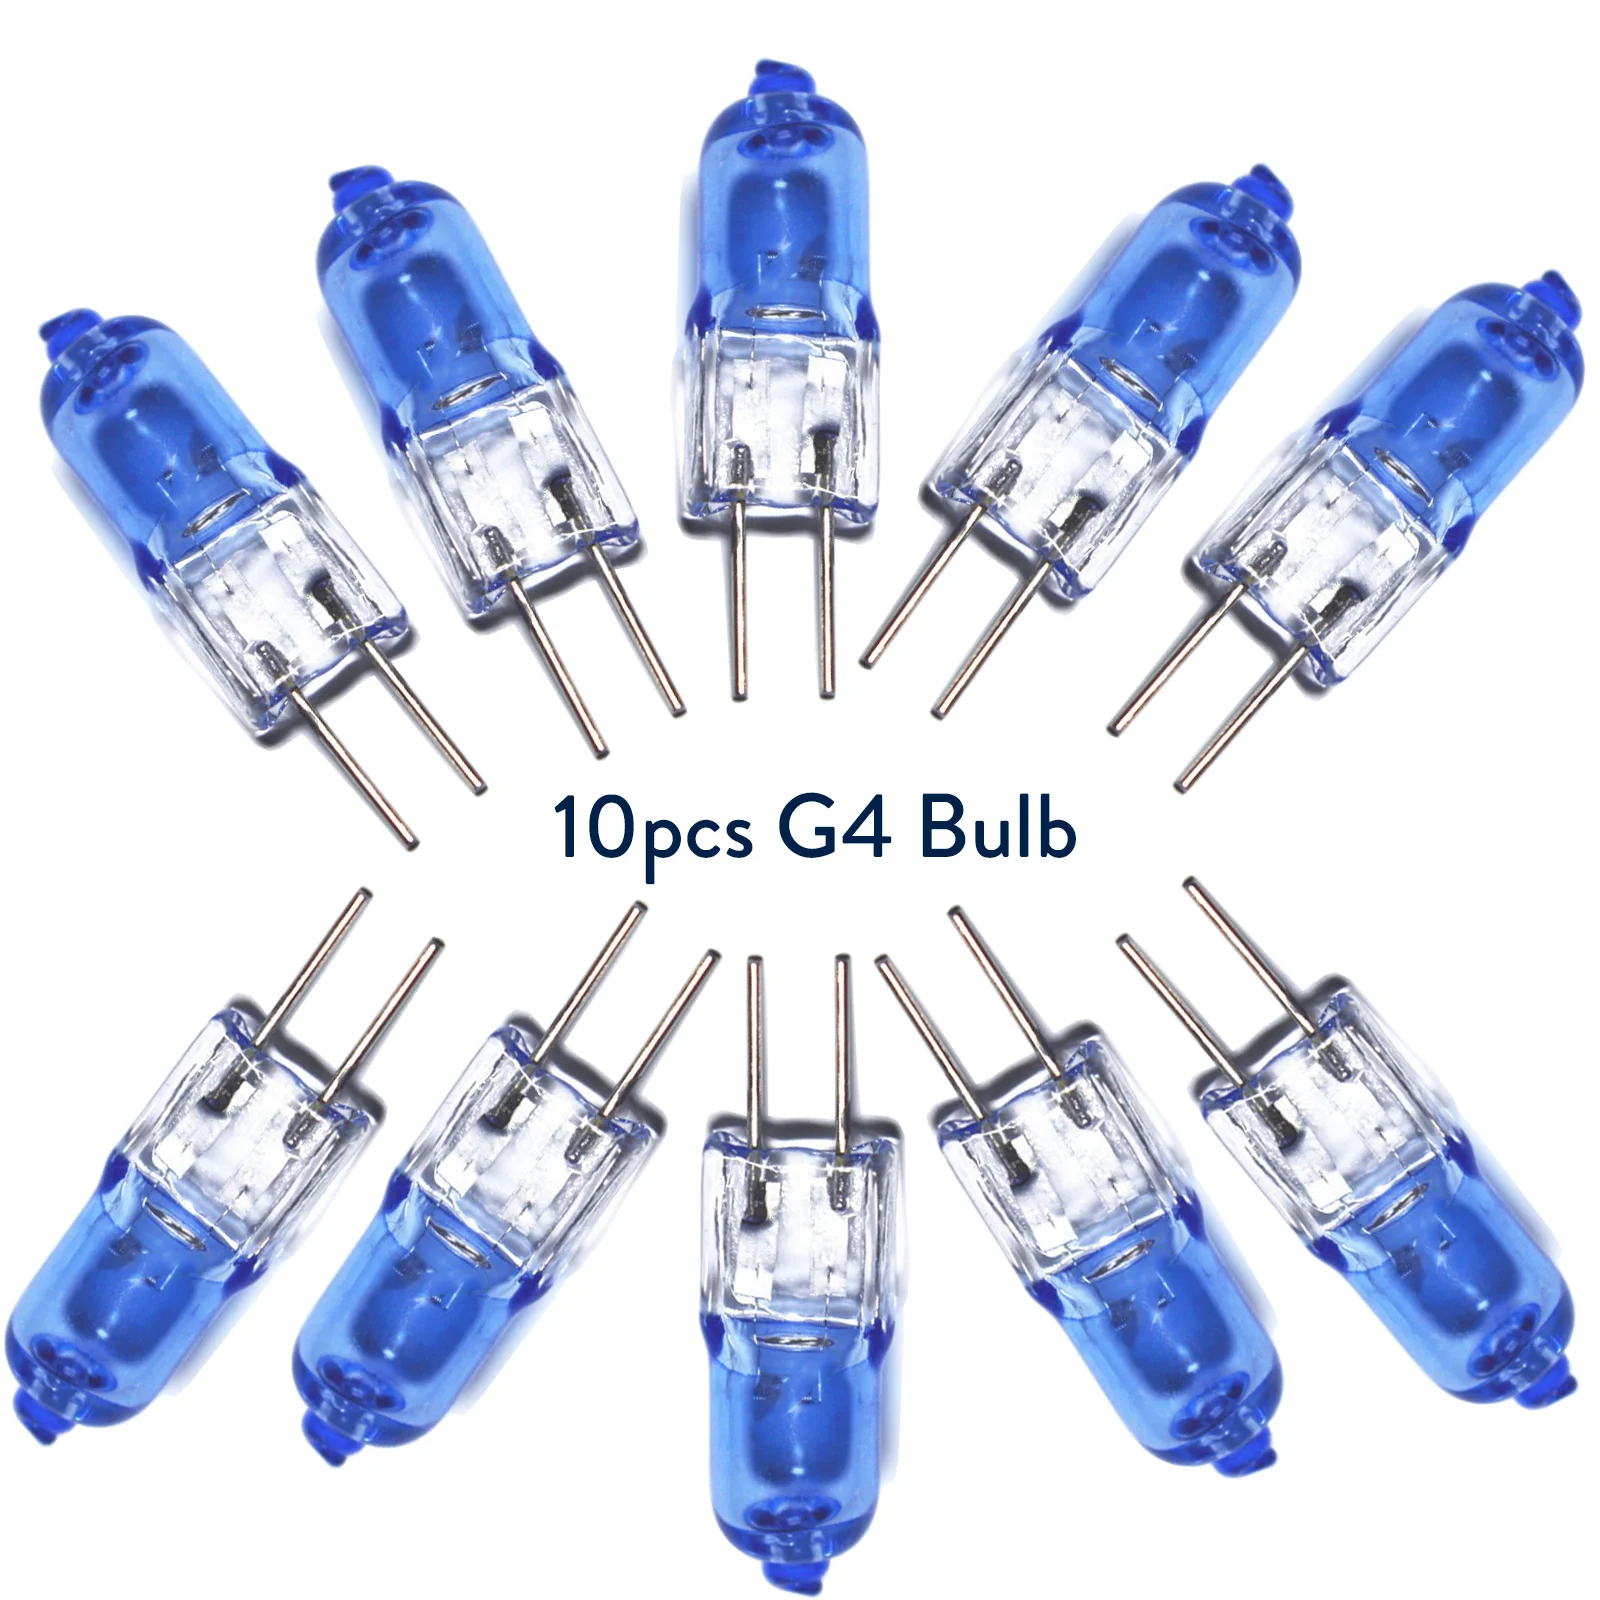 10Pcs Mini G4 Halogen Light Bulb Tungsten JC Type Warm White 12V 20W Spotlight For Crystal Chandelier Capsule Lamp Energy Saving